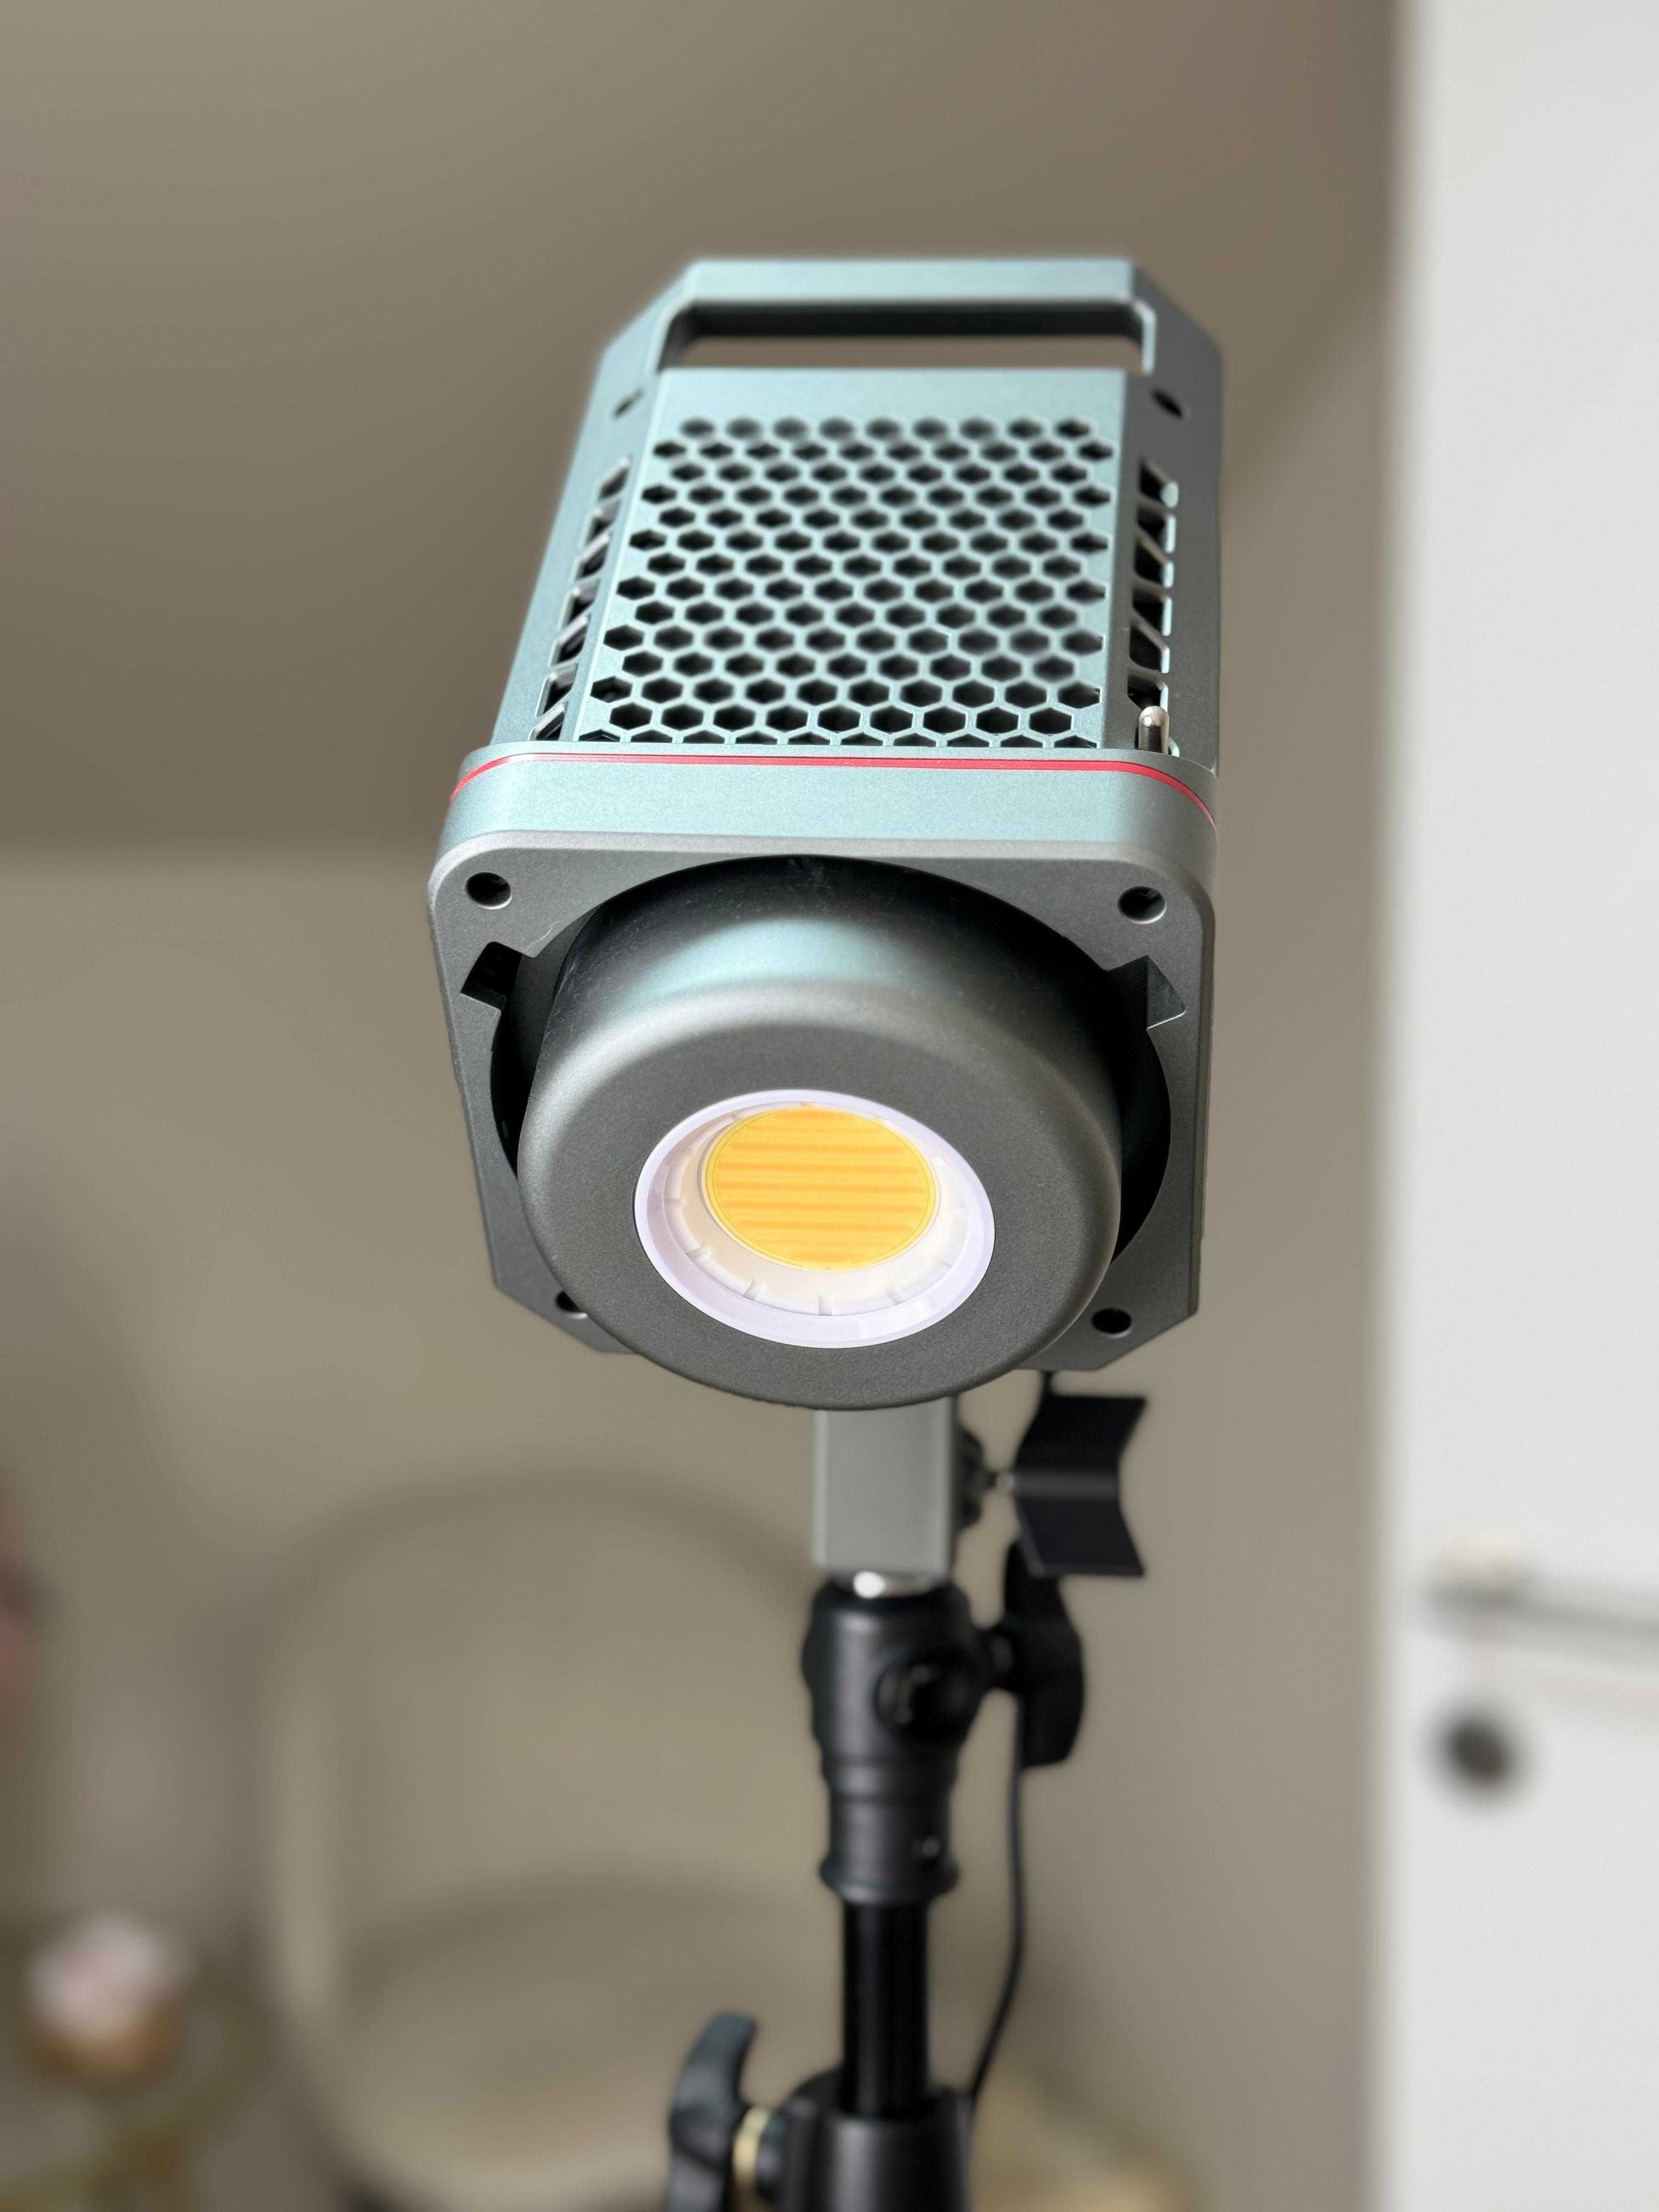 Amaran 200x Lampa Video LED Bi-color cu Bluetooth si reflector